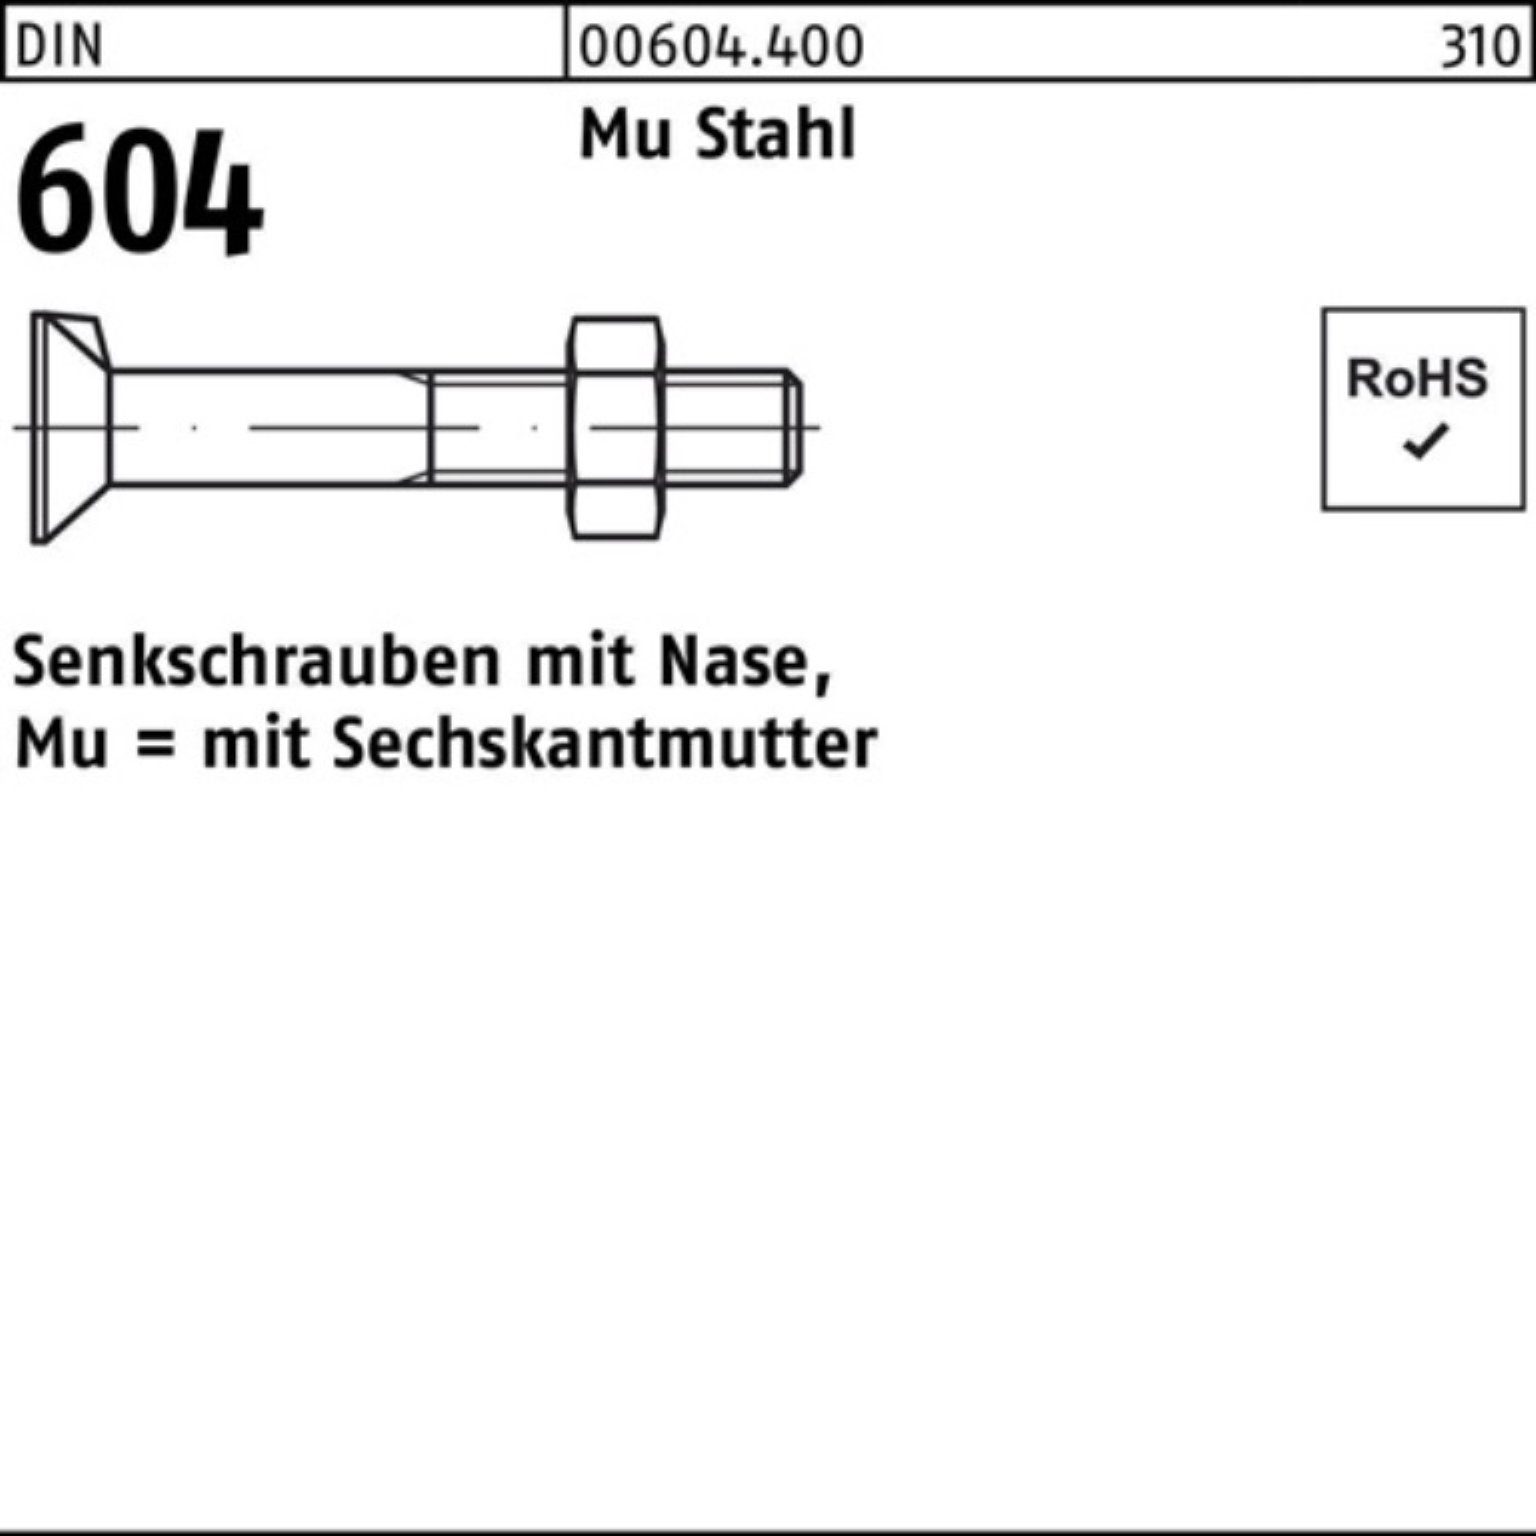 M8x Pack 20 4.6 Senkschraube 55 Senkschraube Nase/6-ktmutter 200er Stahl 604 DIN Mu Reyher